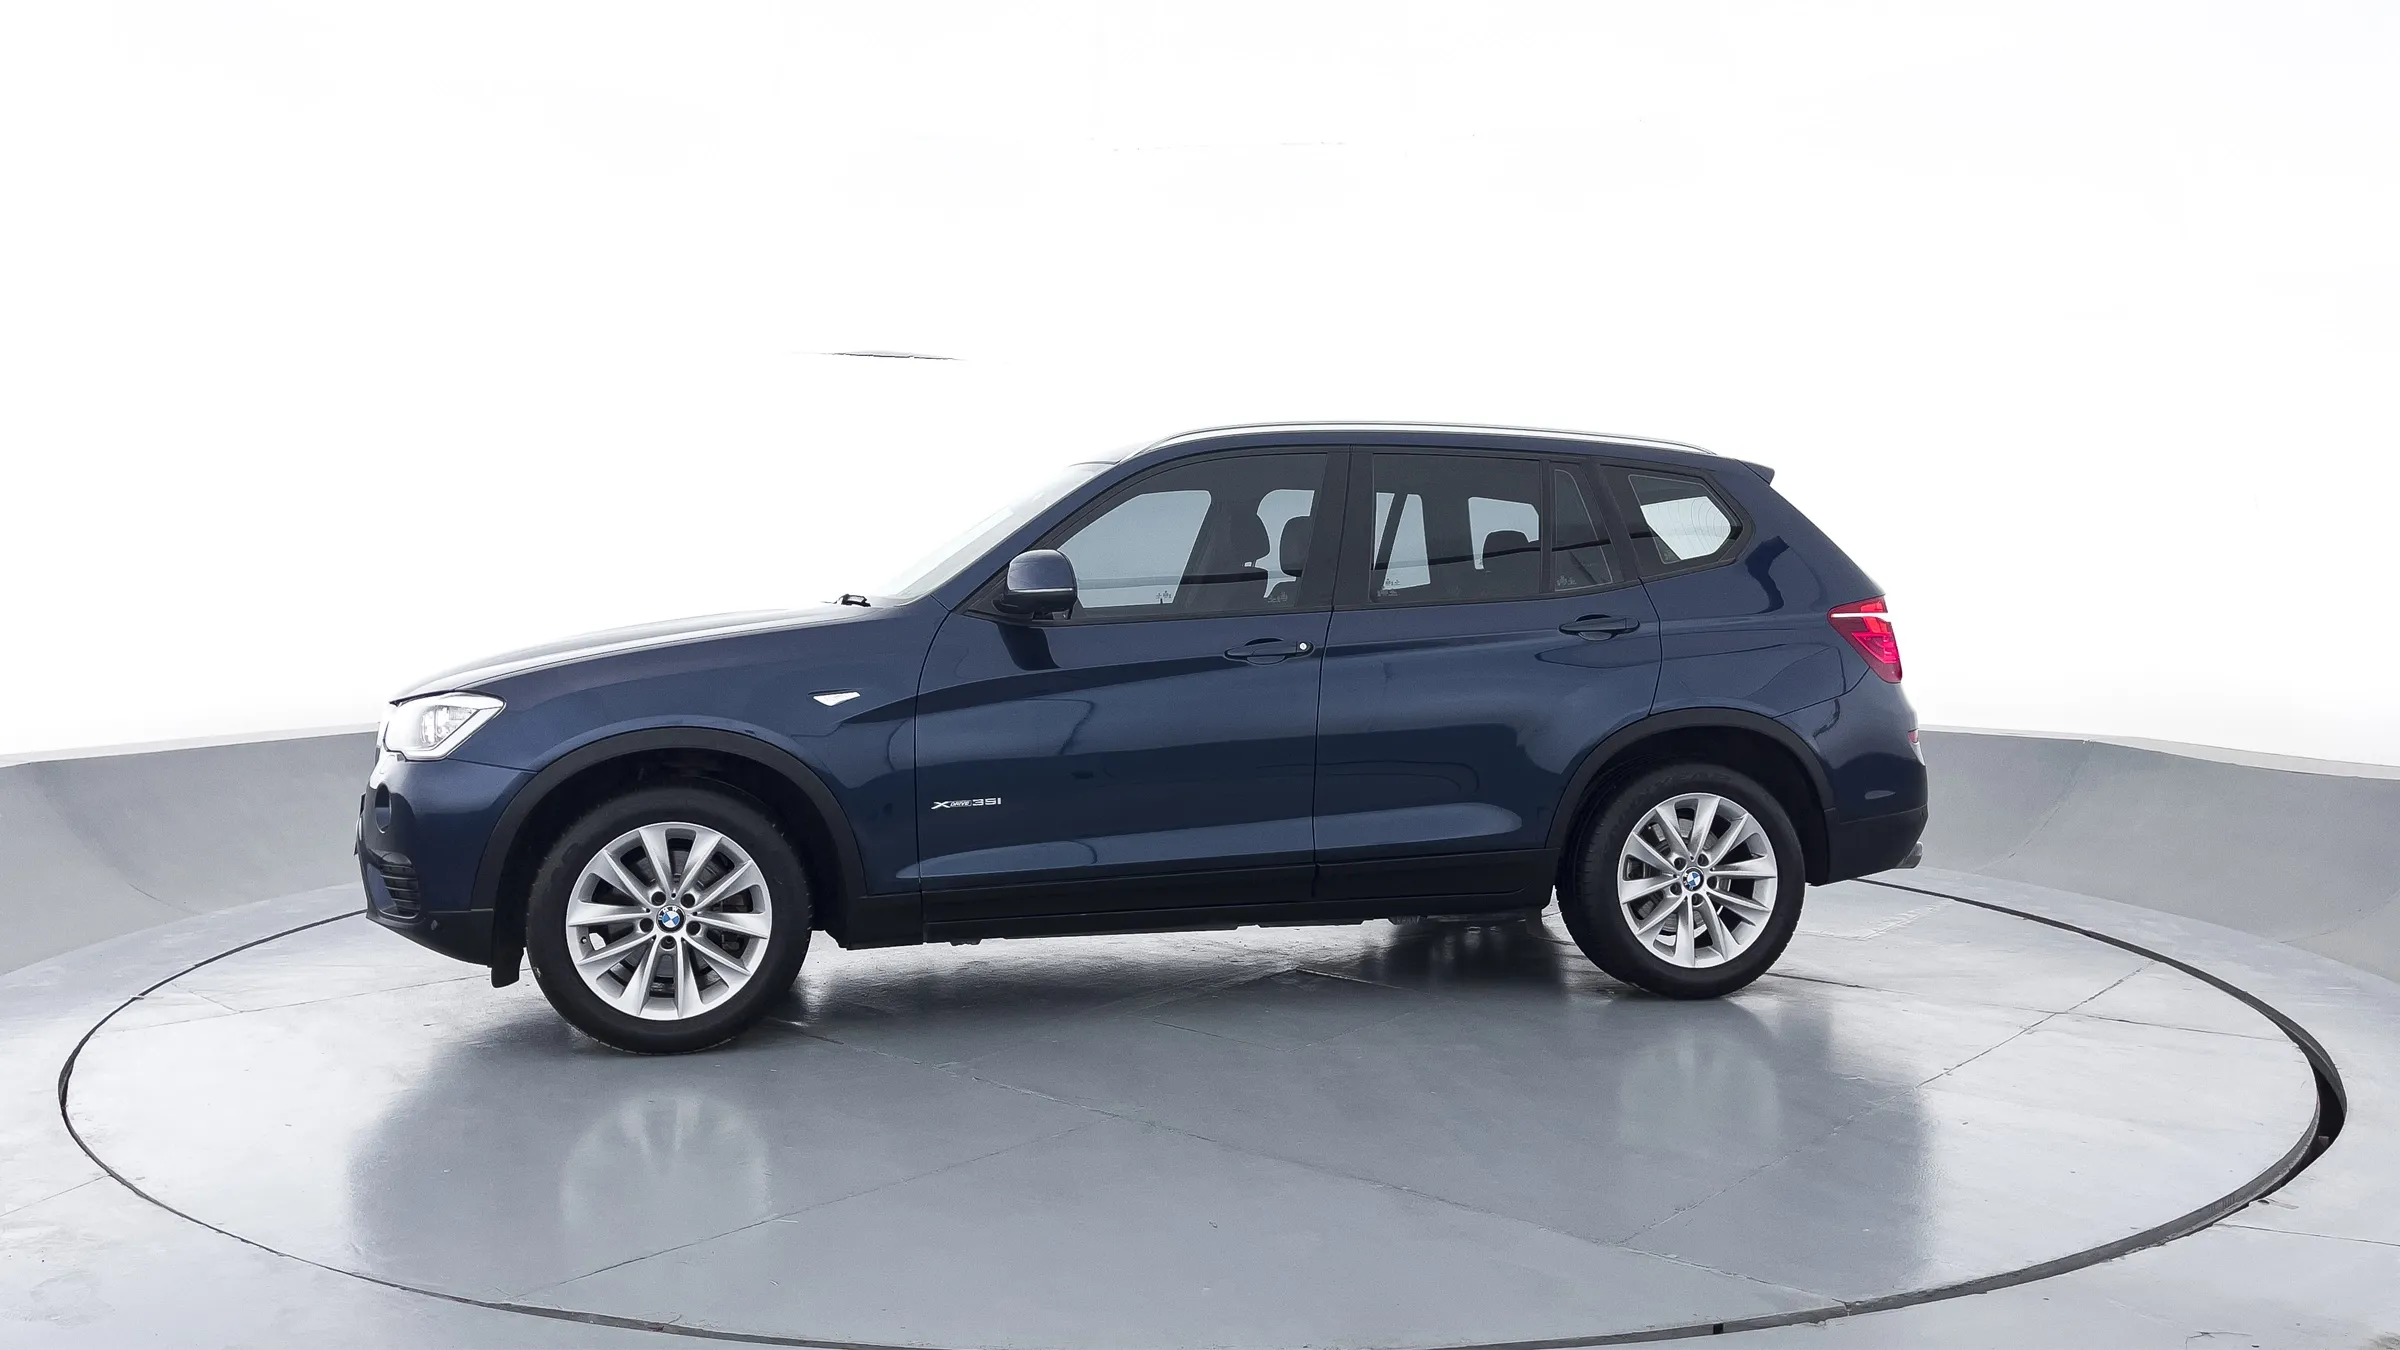 BMW CARROS X3 [E83] 2.5i 2017